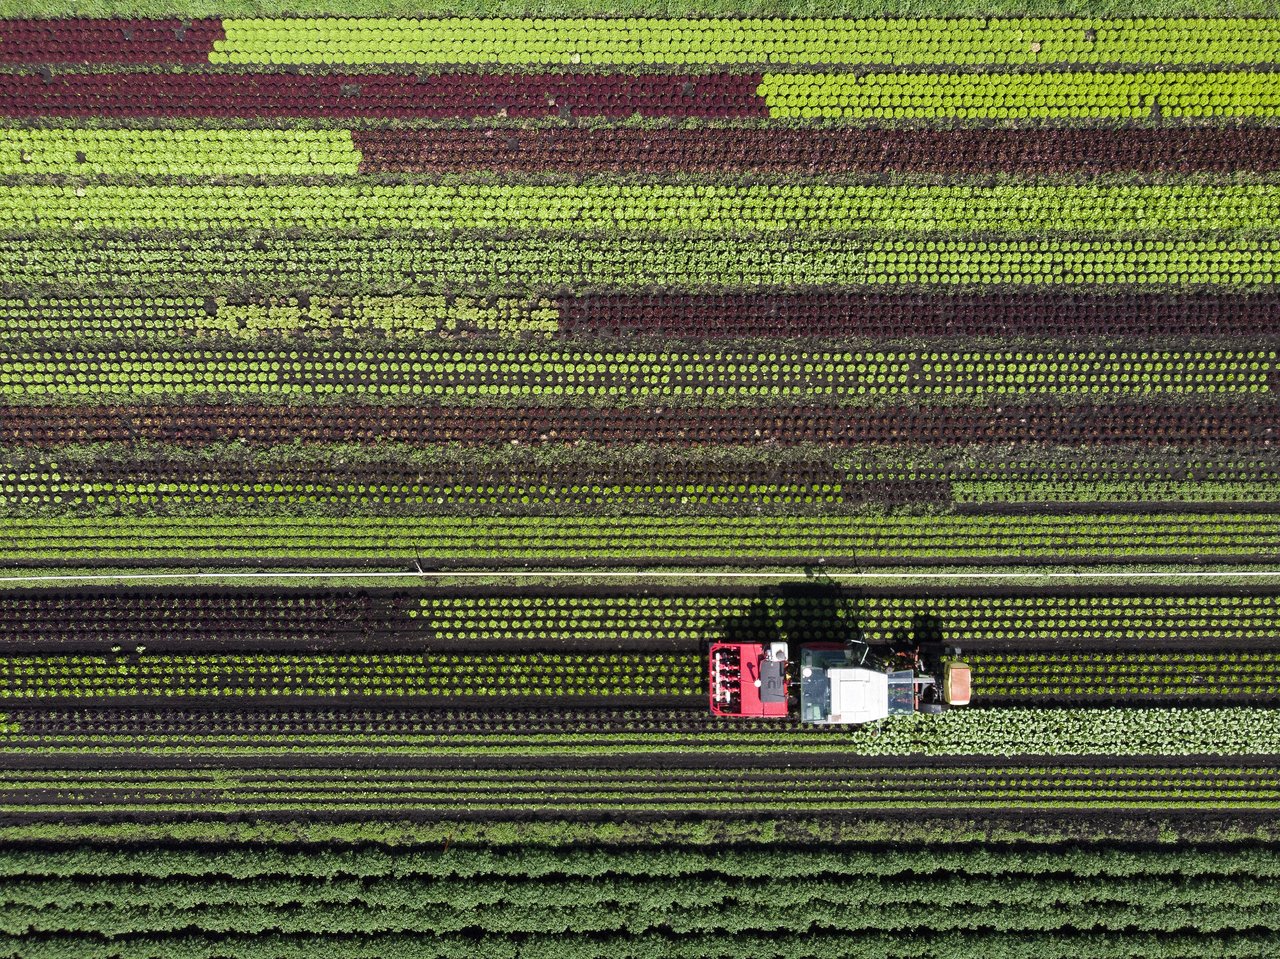 Die Landwirtschaft erprobt längst Möglichkeiten, weniger Pflanzenschutzmittel einzusetzen: Der Prototyp eines Pflanzenschutzroboters auf einem Salatfeld im Seeland. (Bild Keystone/Anthony Anex)